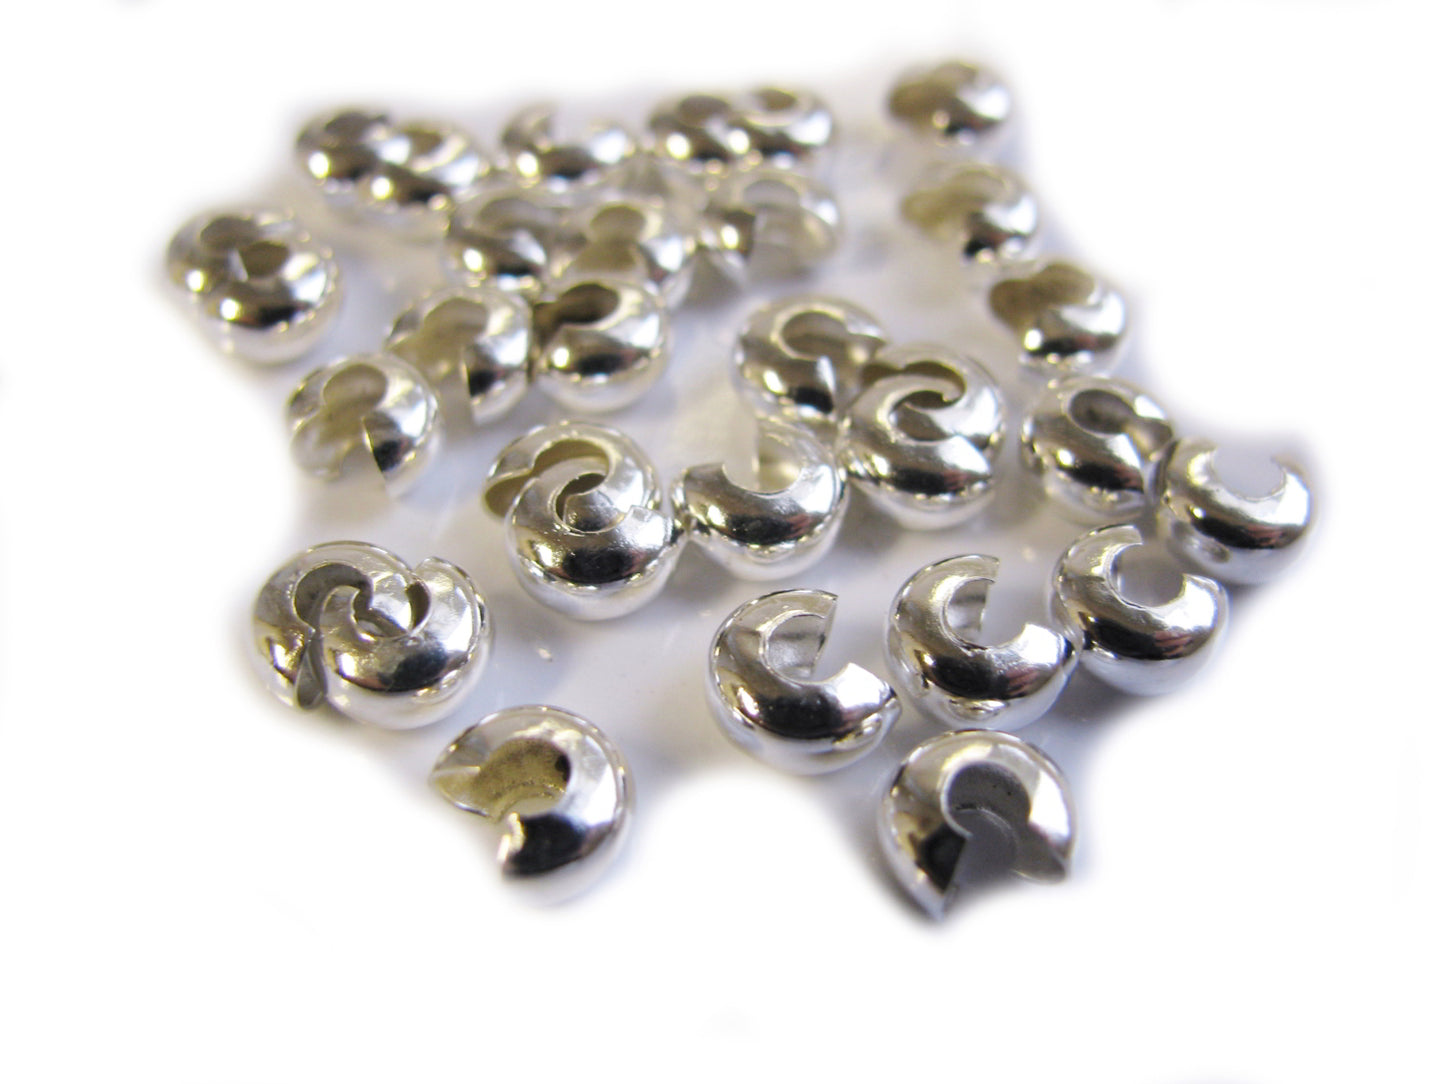 30 Kaschierperlen silberfarben, 6,1 x 3,9 mm, Perlen basteln, Quetschperlen